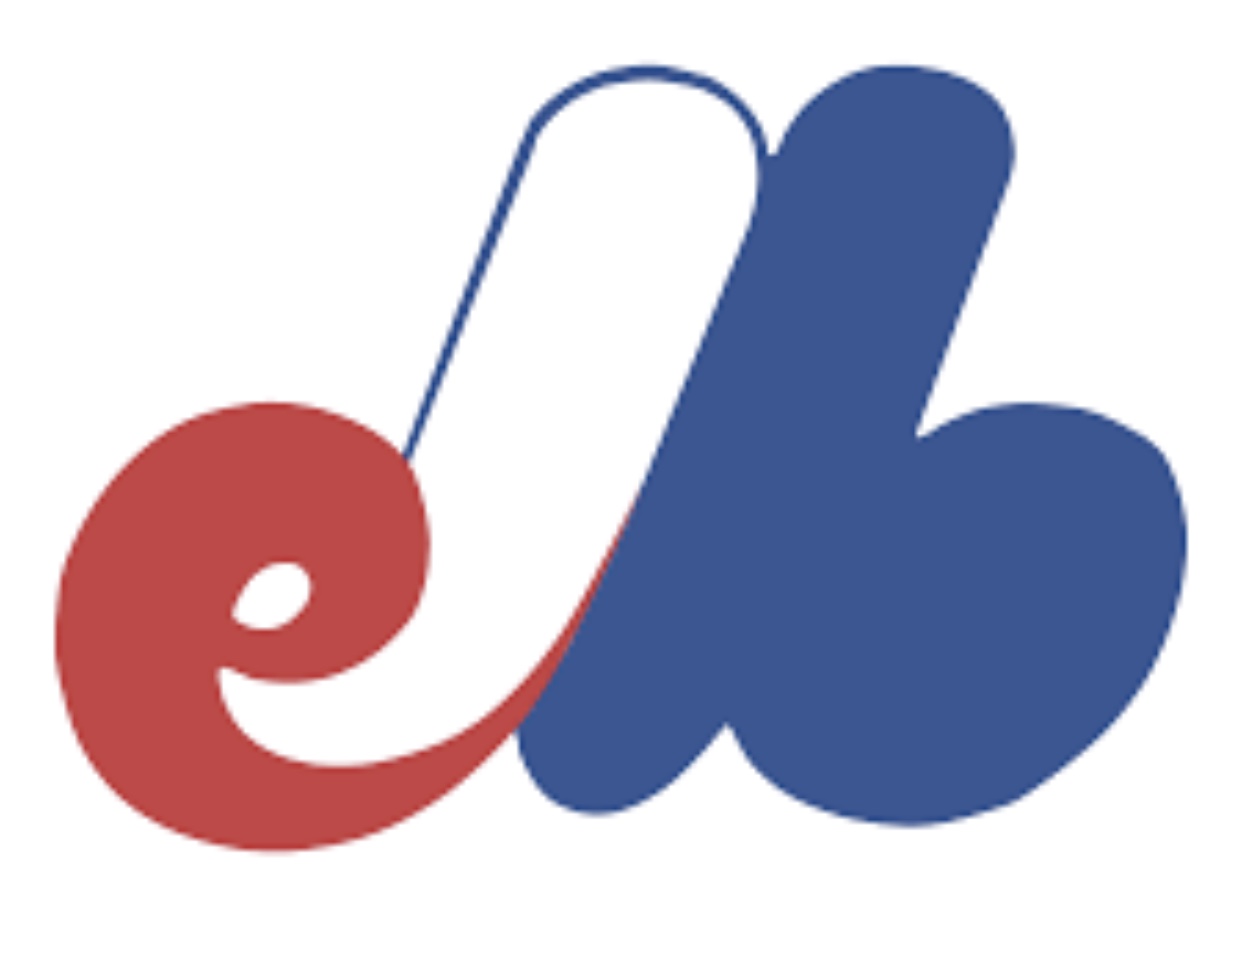 Un logo "Les Expos" bleu et rouge avec la lettre b.